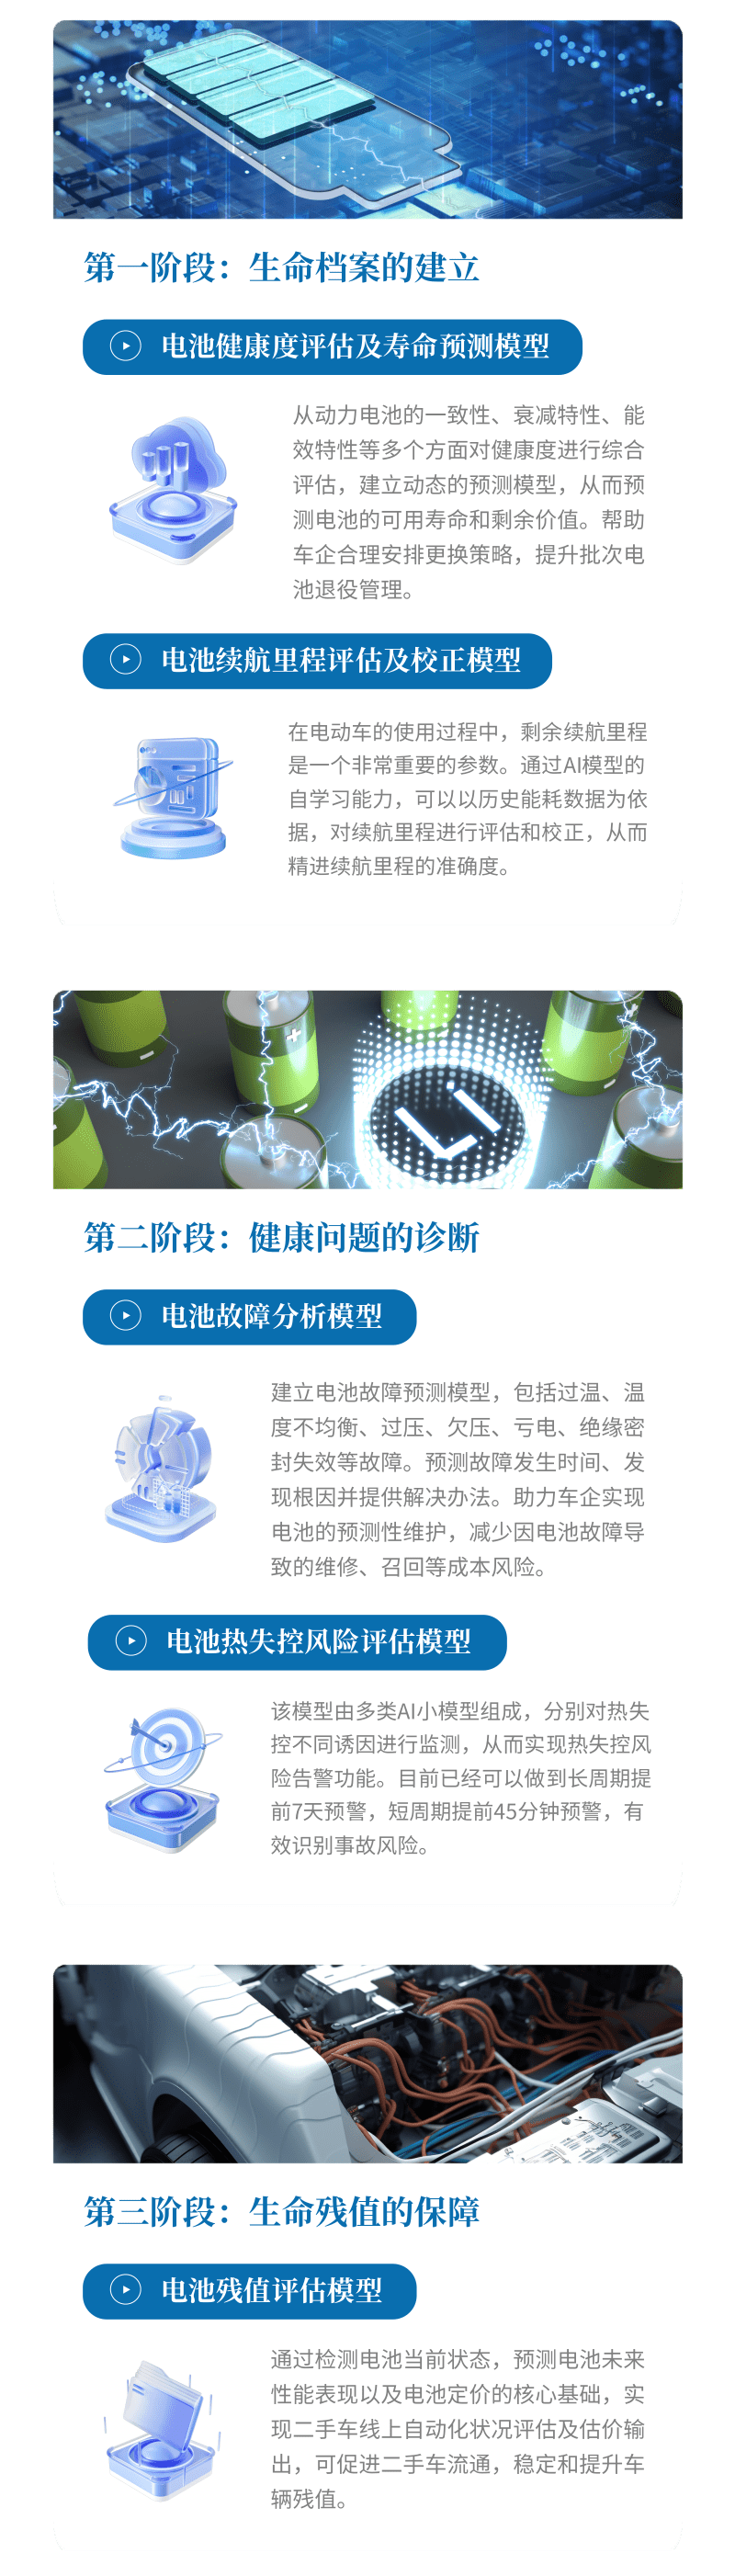 动力电池AI模型介绍@凡科快图.png